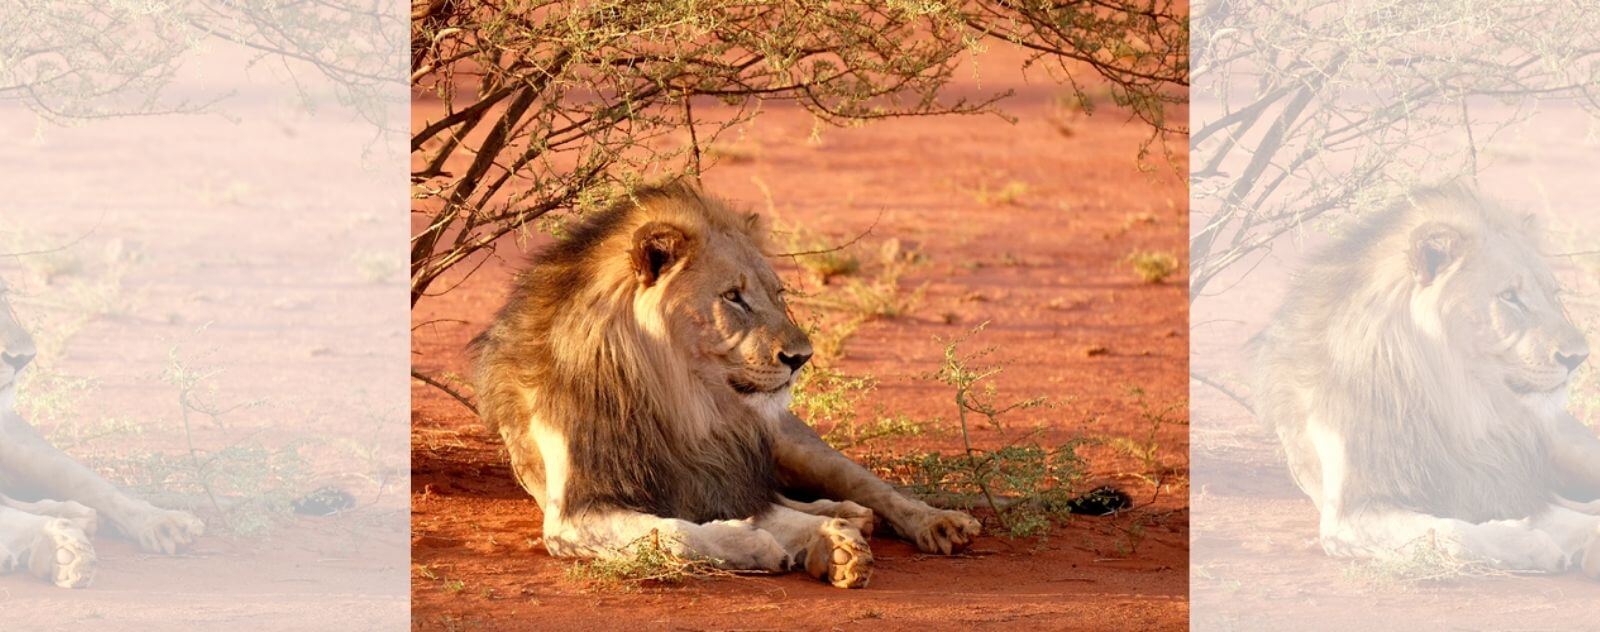 Lion qui a Chaud sous un Arbre et sur de la Terre Chaude et Rouge